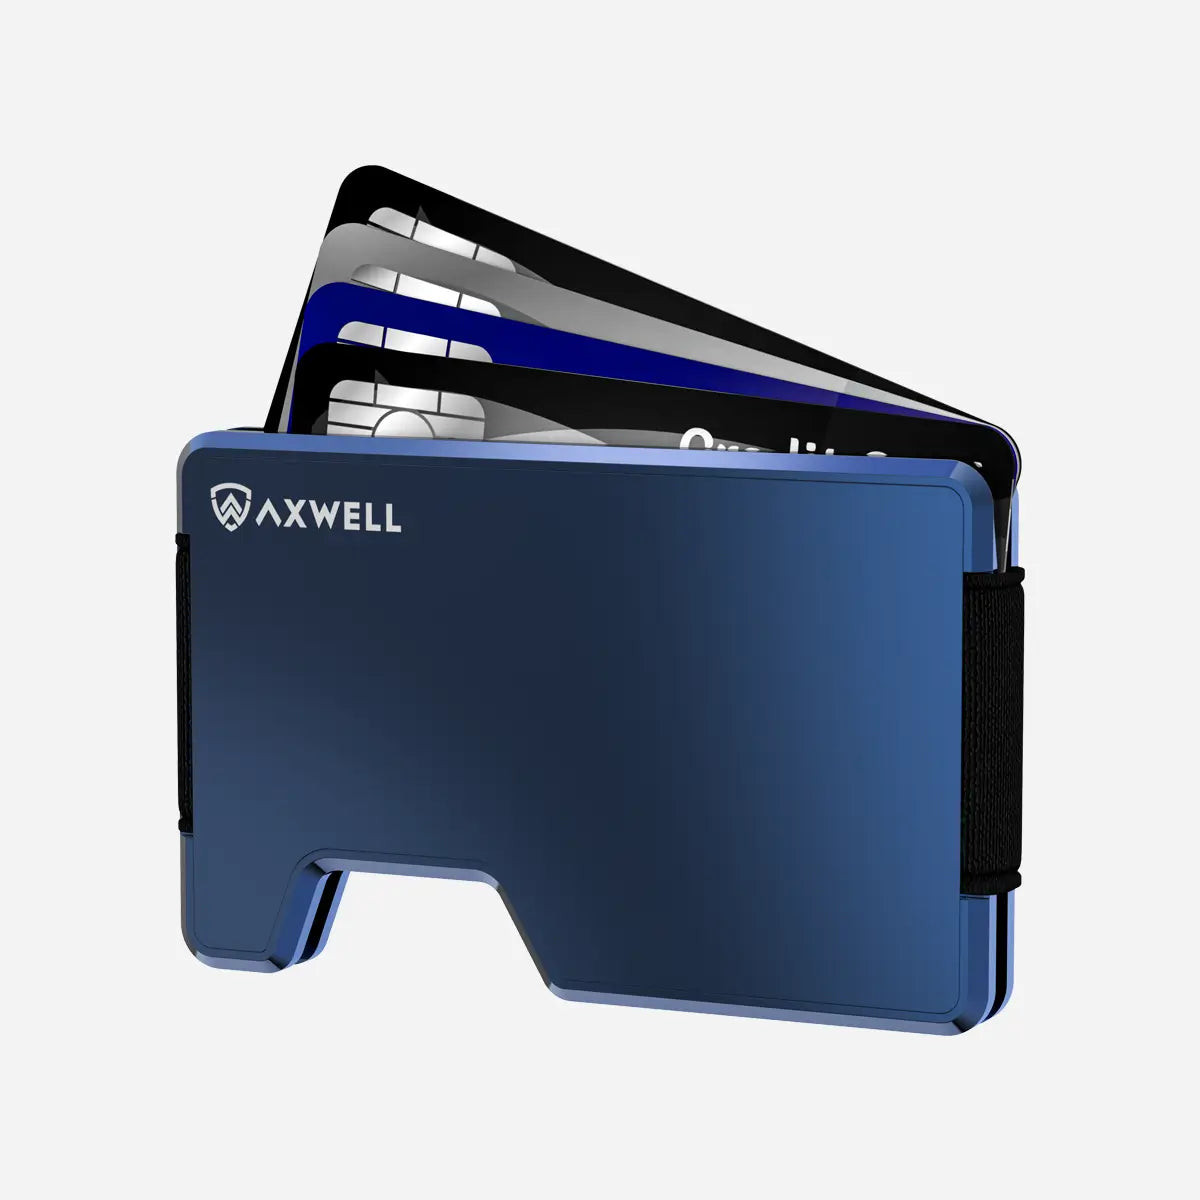 Wallet Key Holder Bundle - Navy Blue